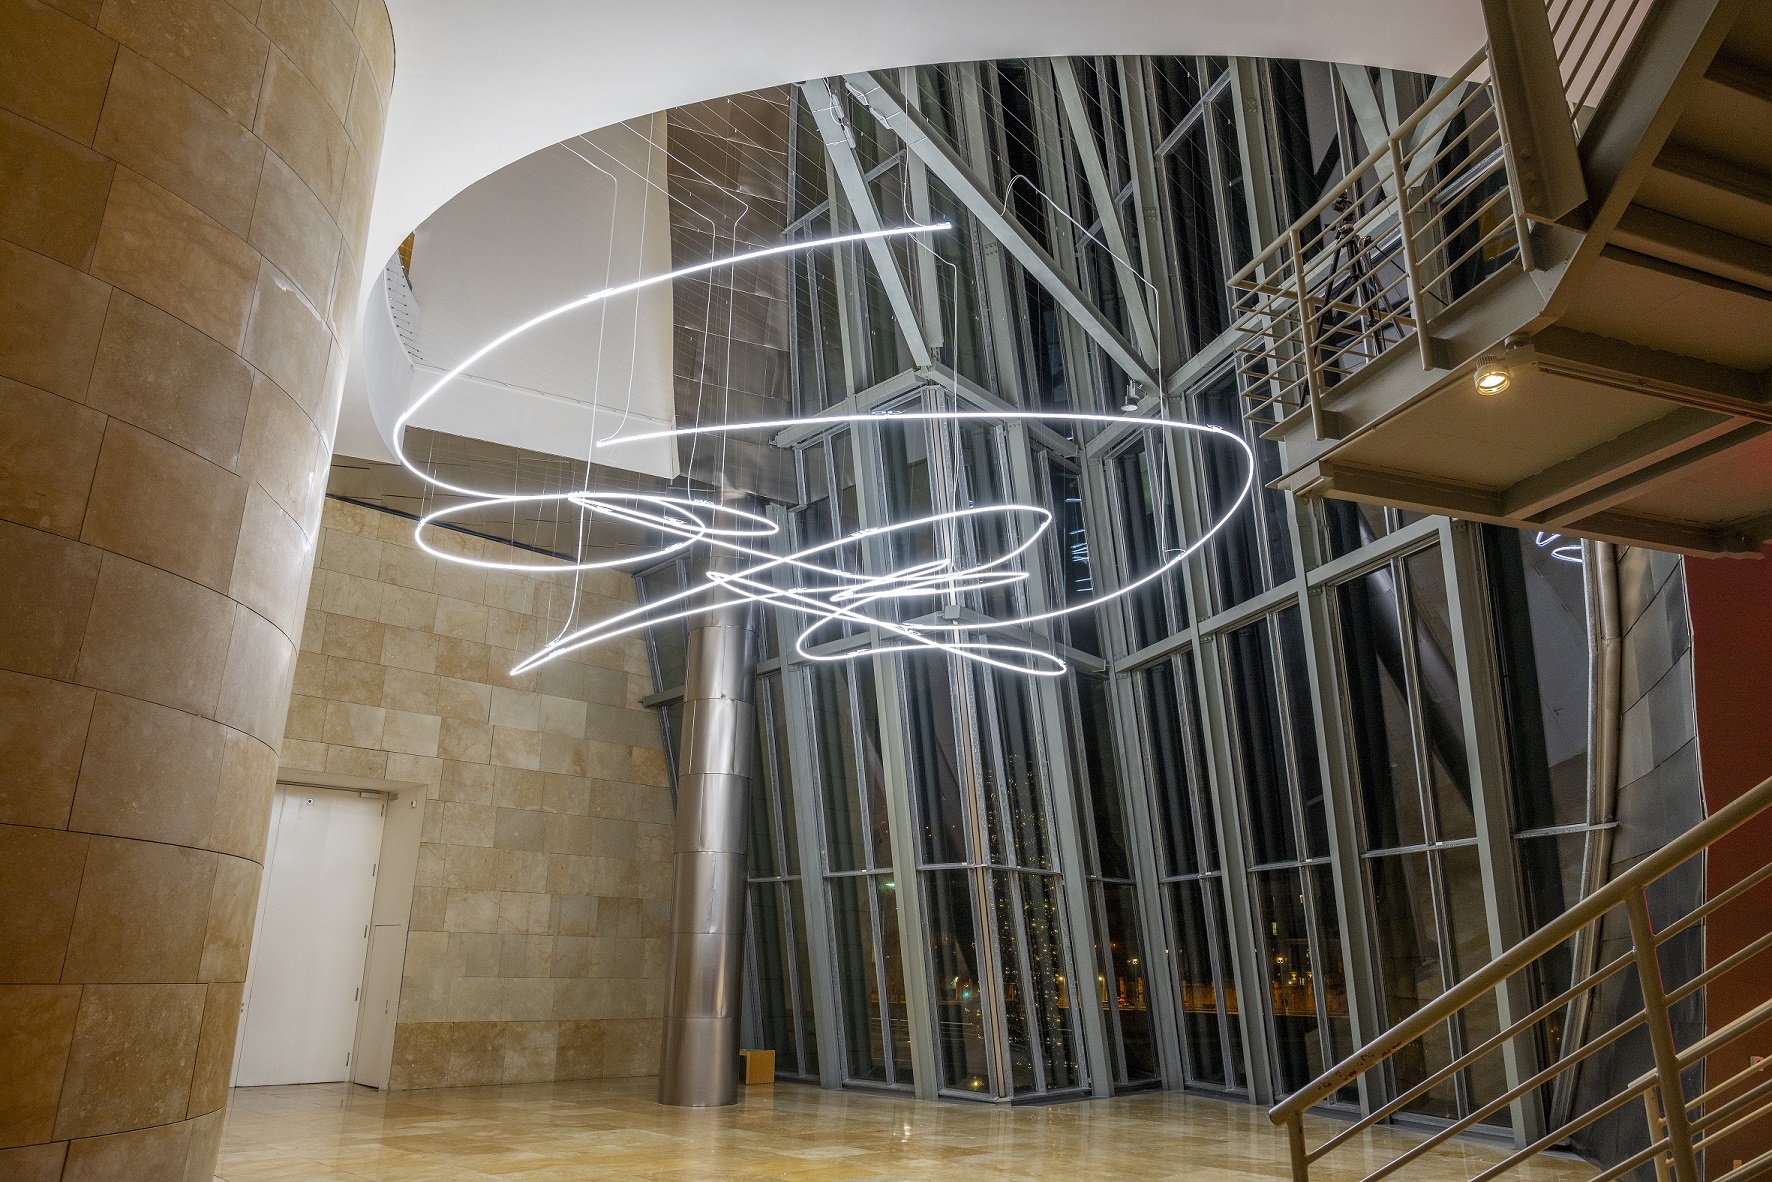 Lucio Fontana a Bilbao. Struttura al neon installata per tre anni nell’atrio del Guggenheim Museum